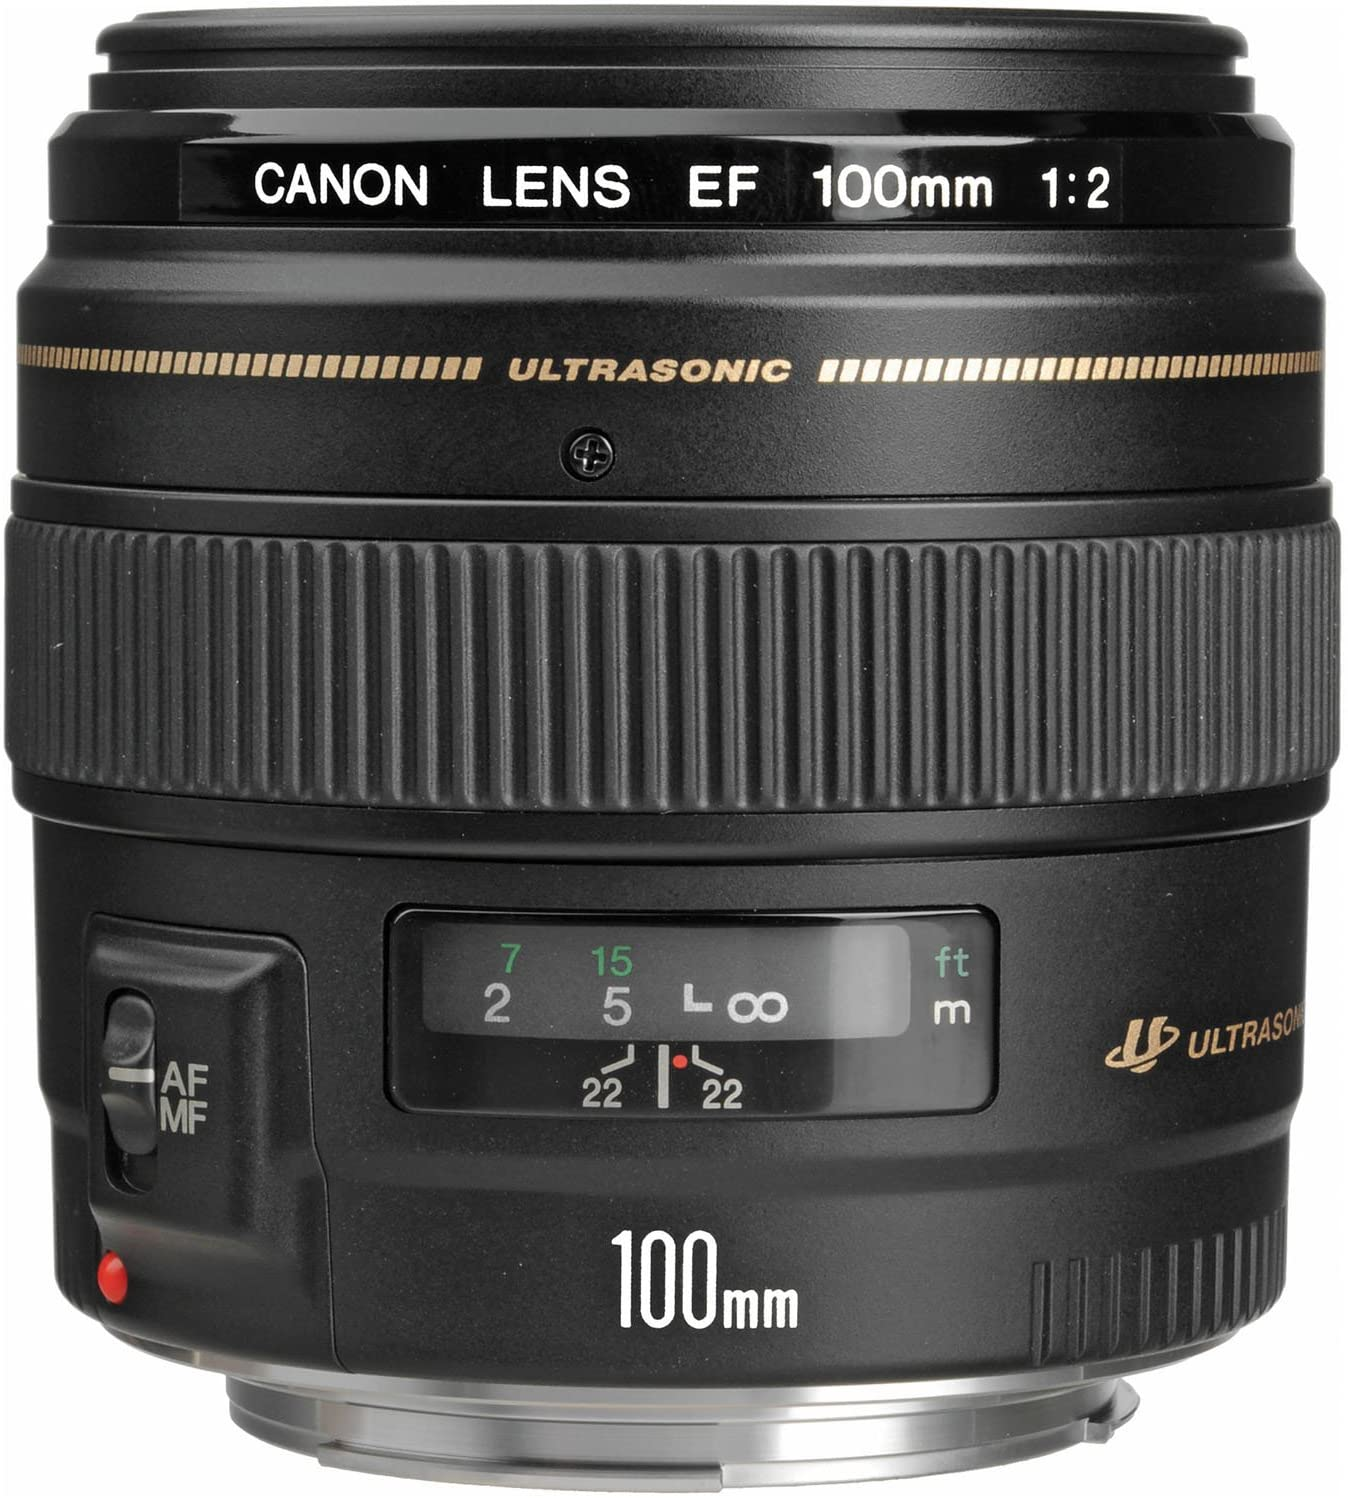 Canon 100mm f2.0 USM EF Lens